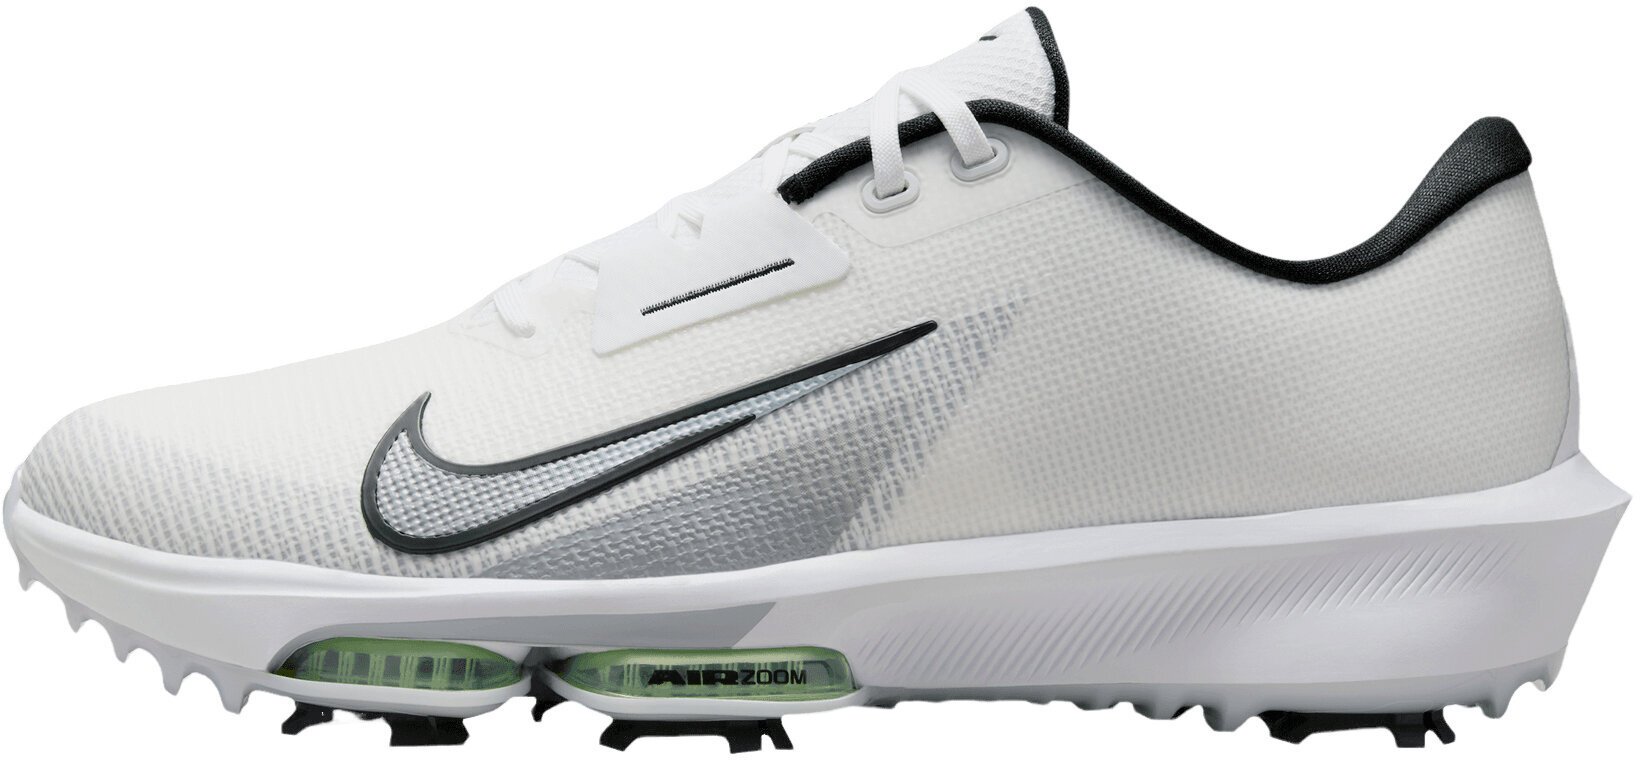 Calçado de golfe para homem Nike Air Zoom Infinity Tour Next 2 Unisex Golf Shoes White/Black/Vapor Green/Pure Platinum 45